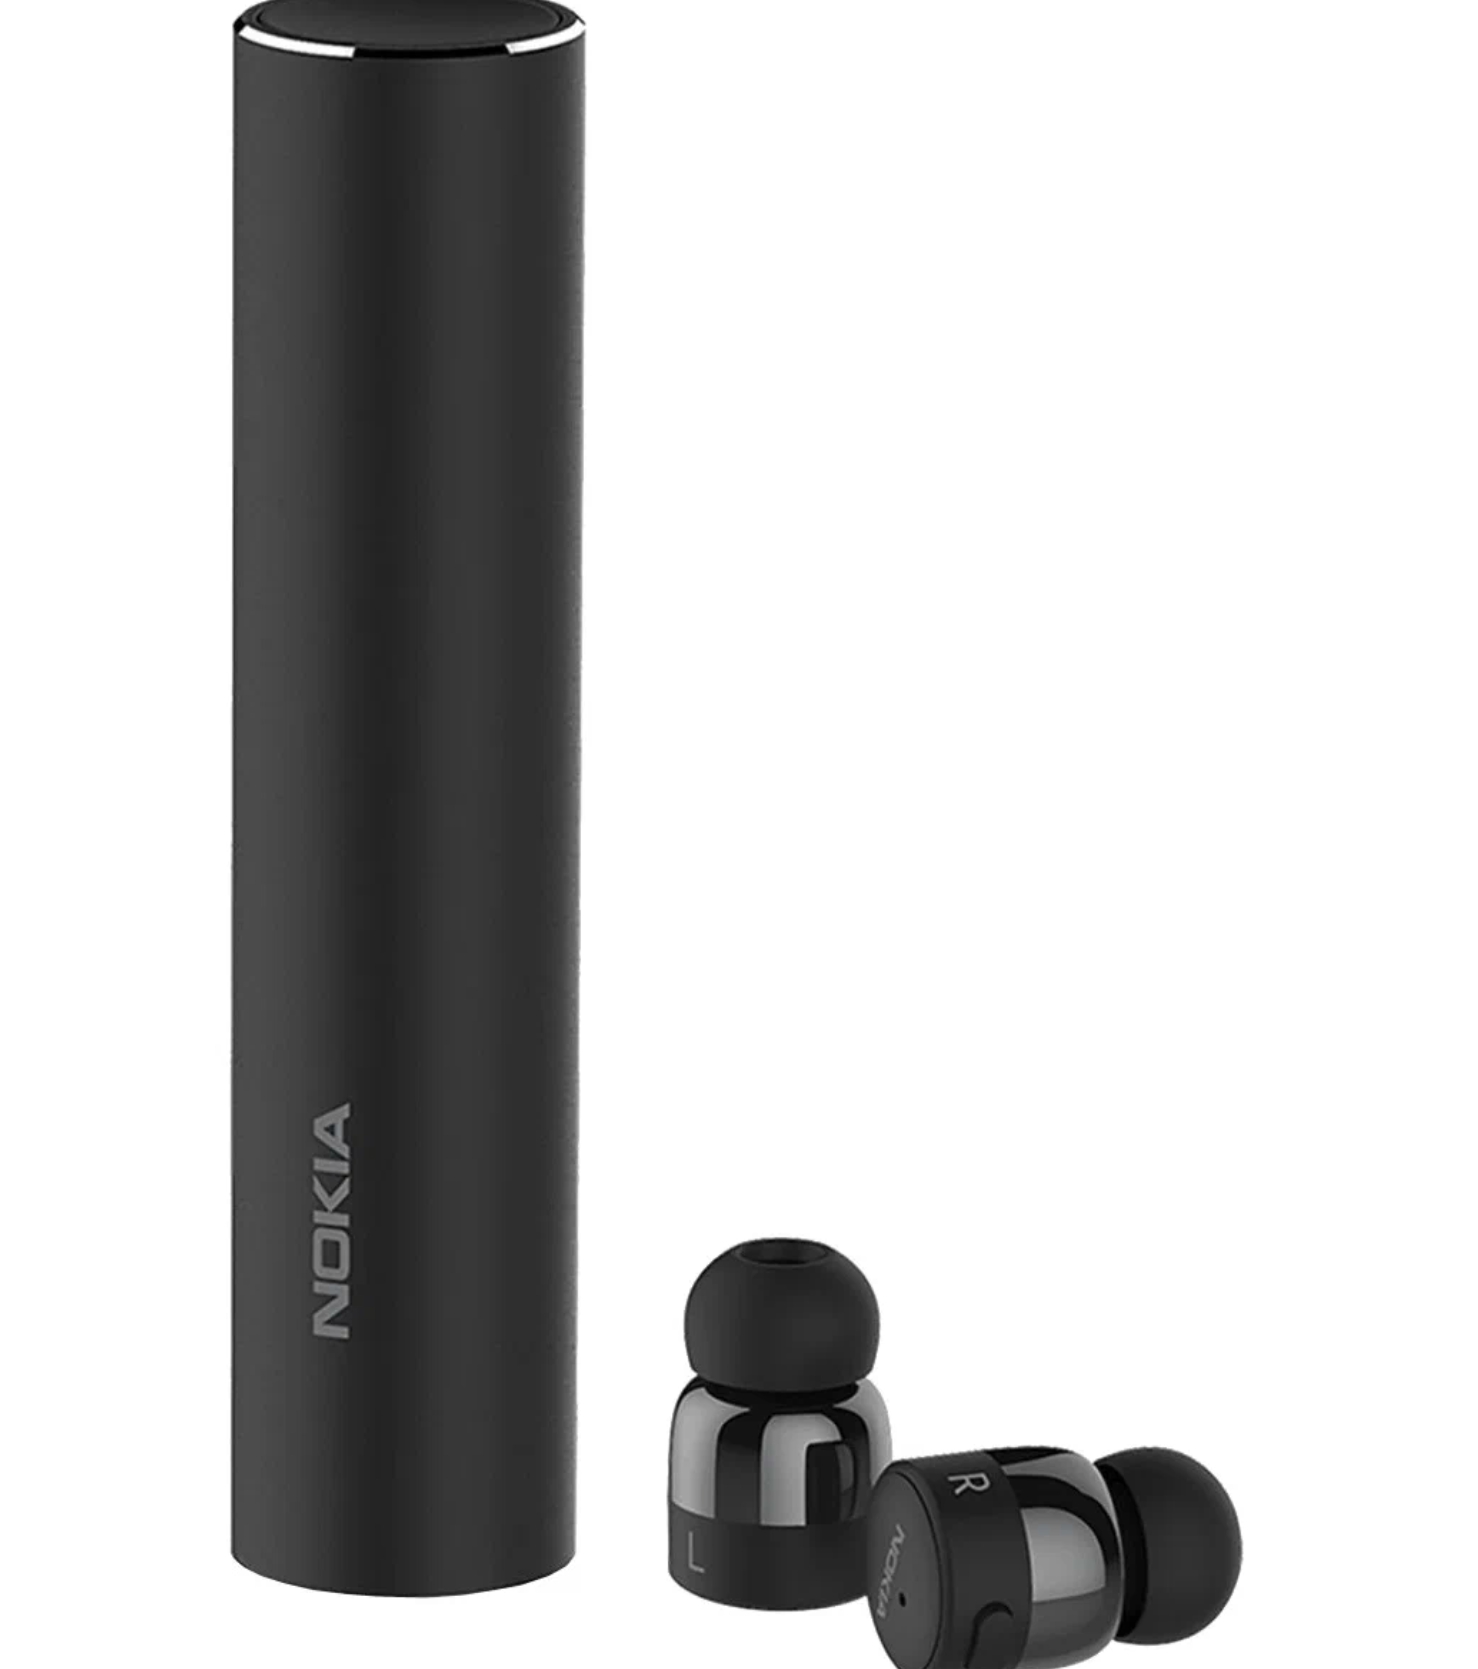 Беспроводные наушники Nokia True Wireless Earbuds V2, black